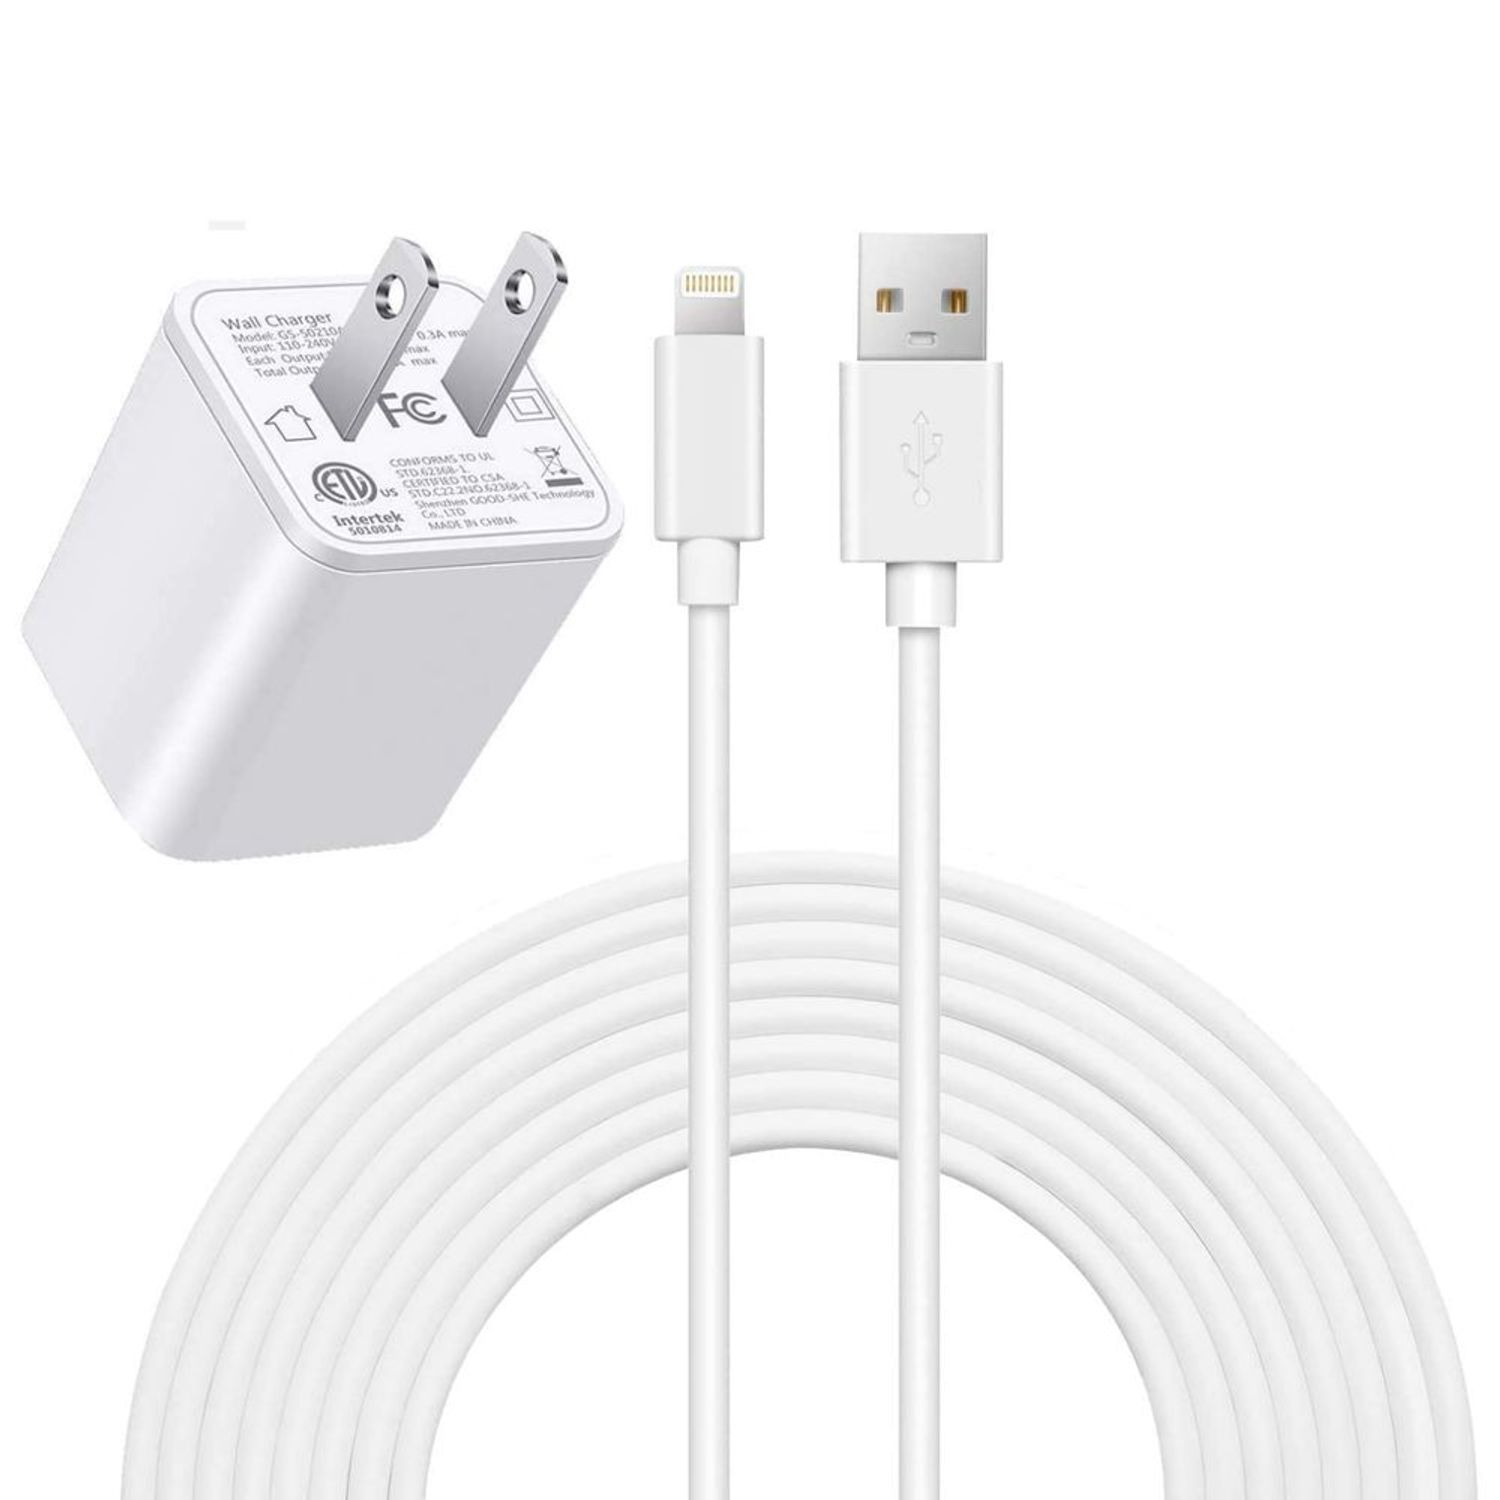 Acerca de los adaptadores de energía USB de Apple - Soporte técnico de  Apple (US)